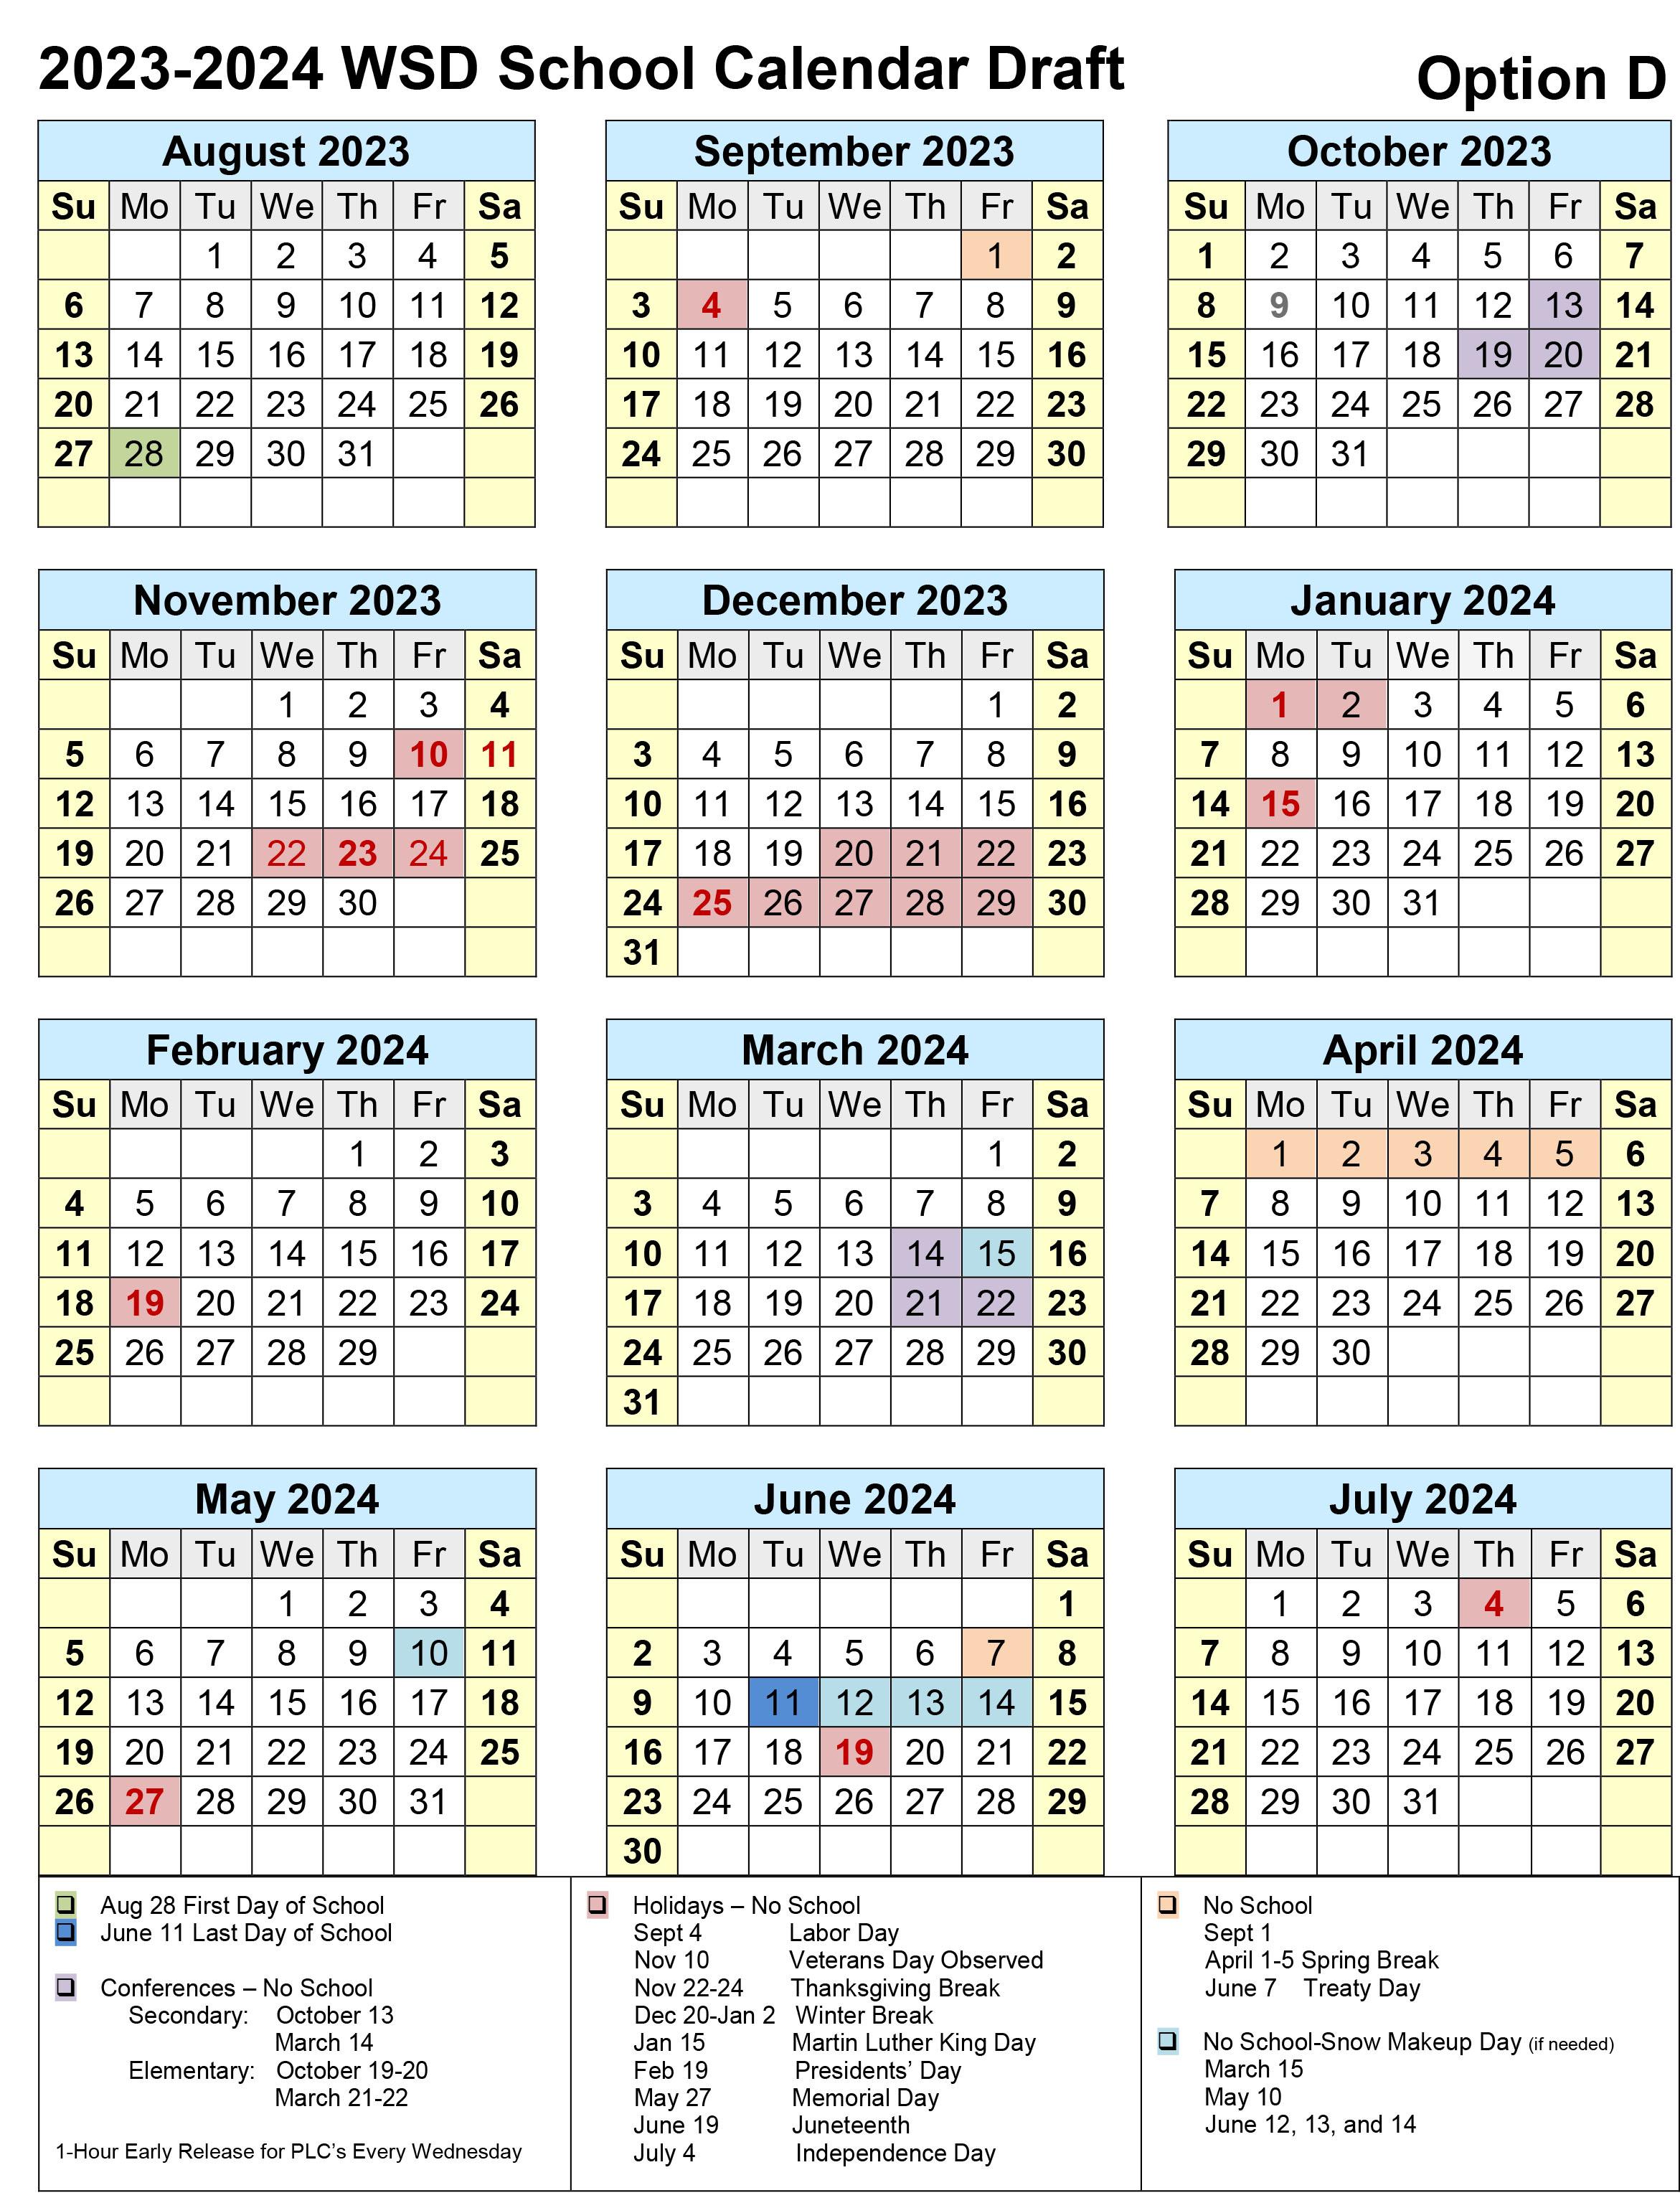 2023-2024 Calendar option D